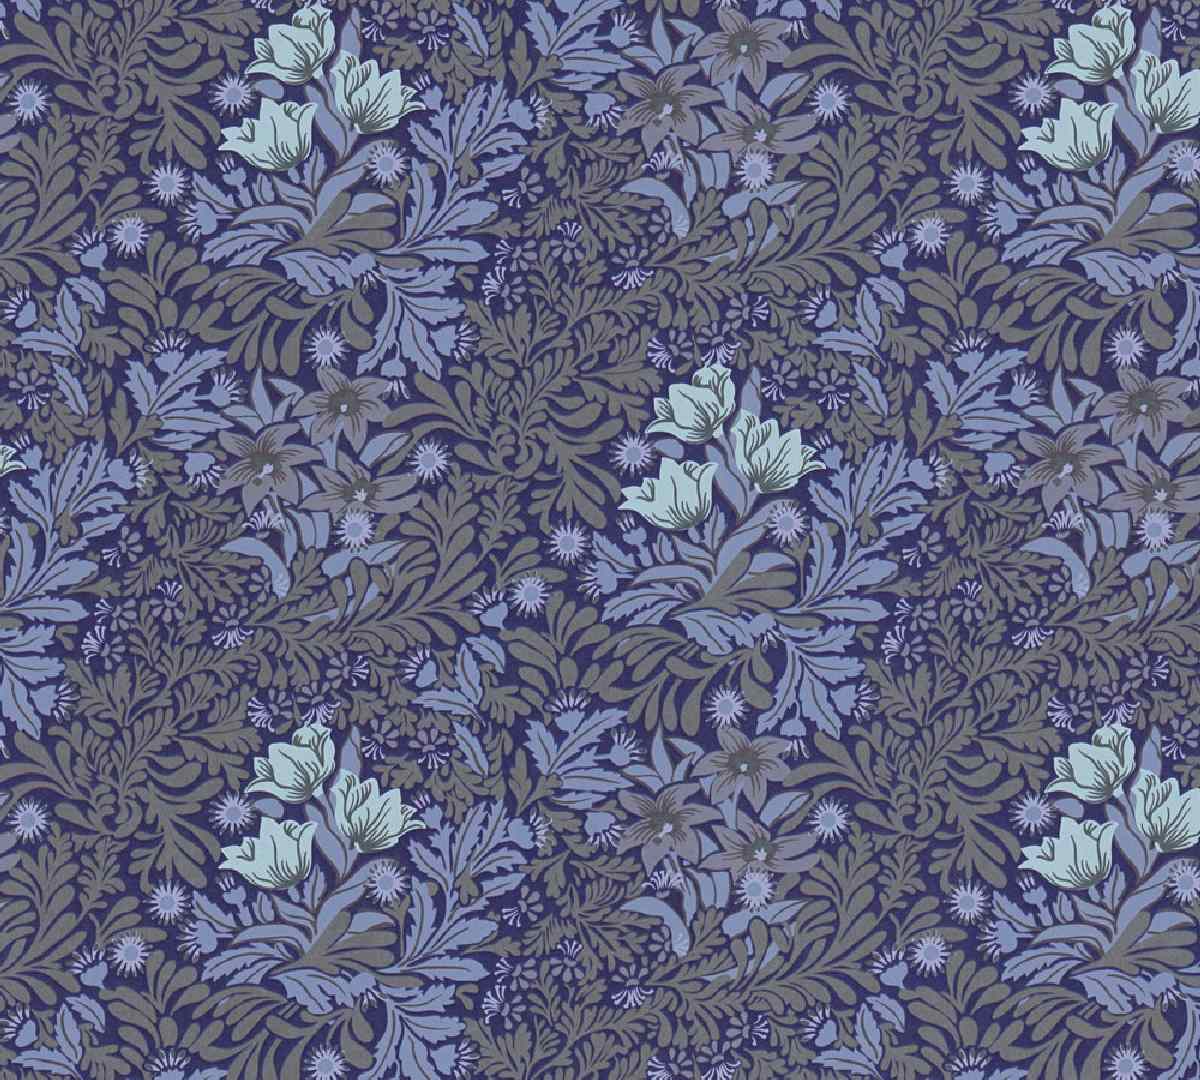 Vliestapete Art of Eden 390571 - Blumentapete Muster - Blau, Grau